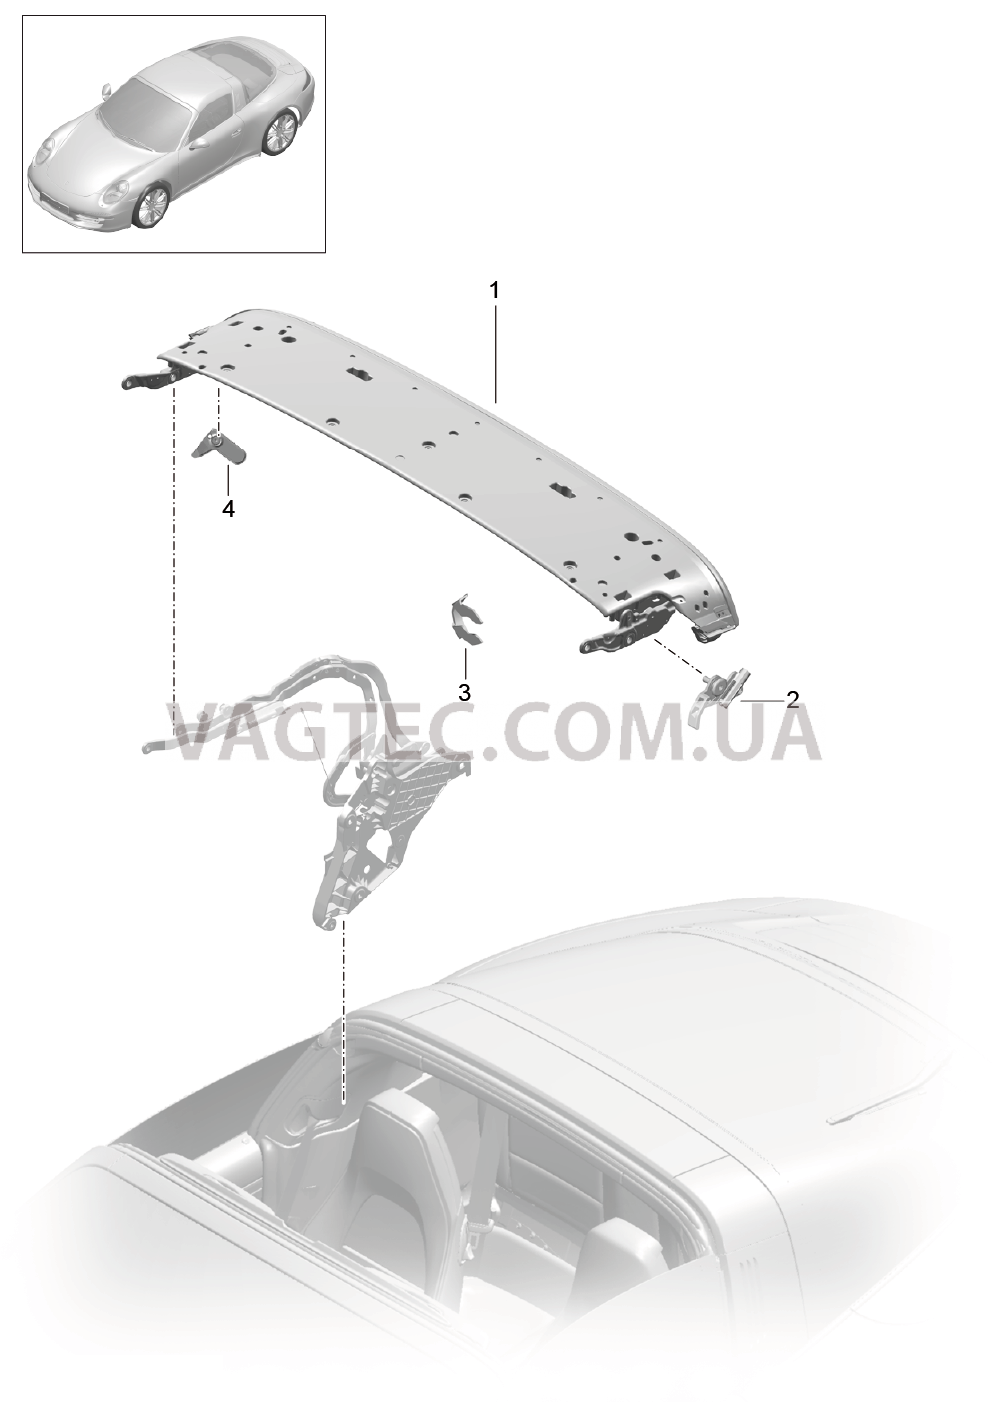 811-022 Каркас складного верха, Отдельные детали, Дуга, Блокировка, боковой
						
						TARGA для PORSCHE 911.Carrera 2012-2016USA